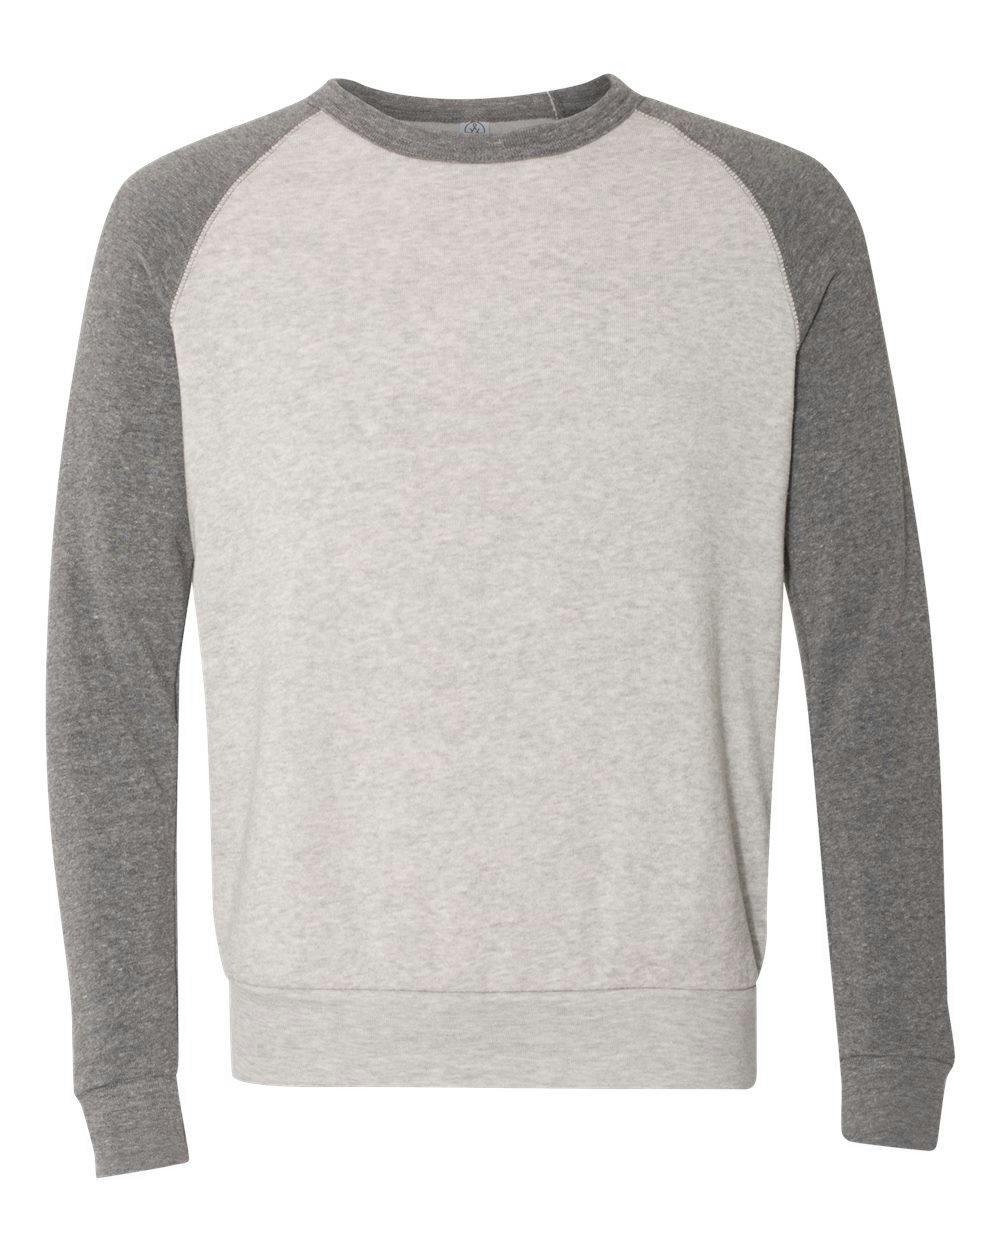 Image for Champ Eco-Fleece Colorblocked Sweatshirt - 32022